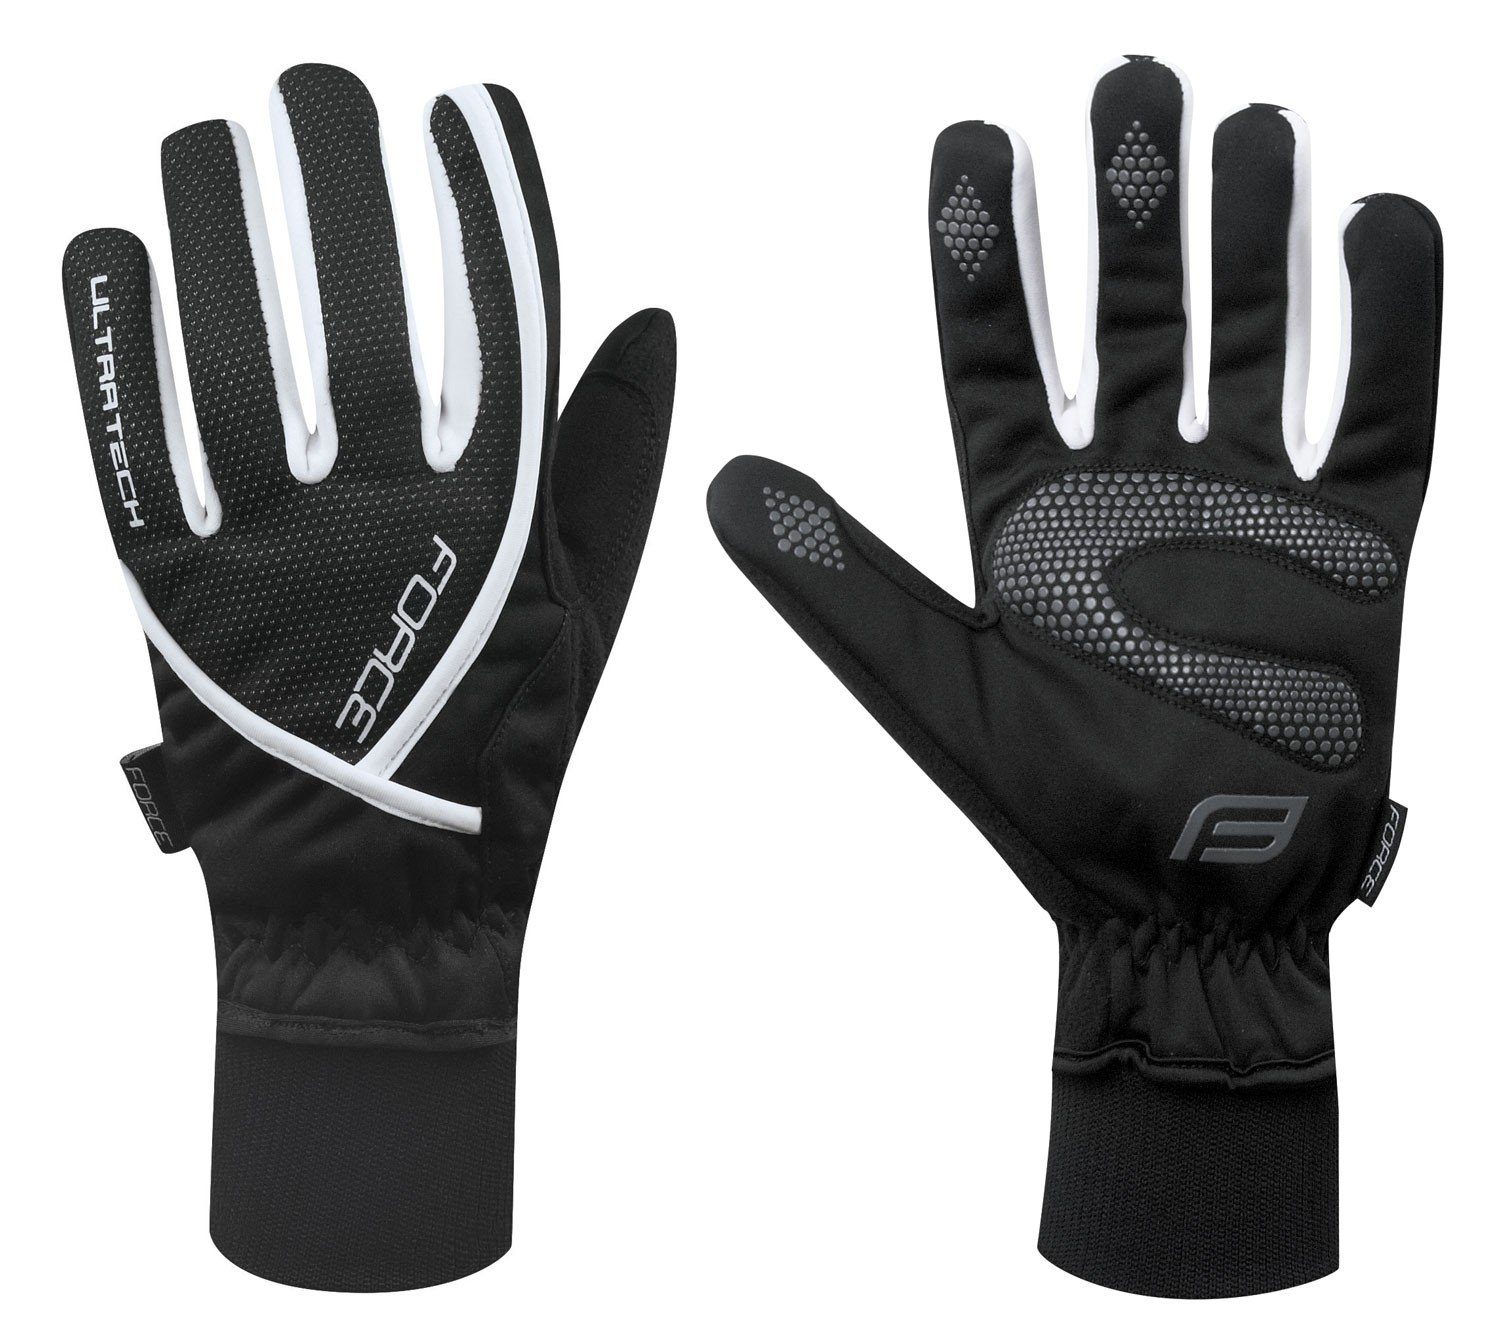 °C FORCE °C schwarz FORCE +5 ULTRA bis Fahrradhandschuhe Handschuhe TECH 0